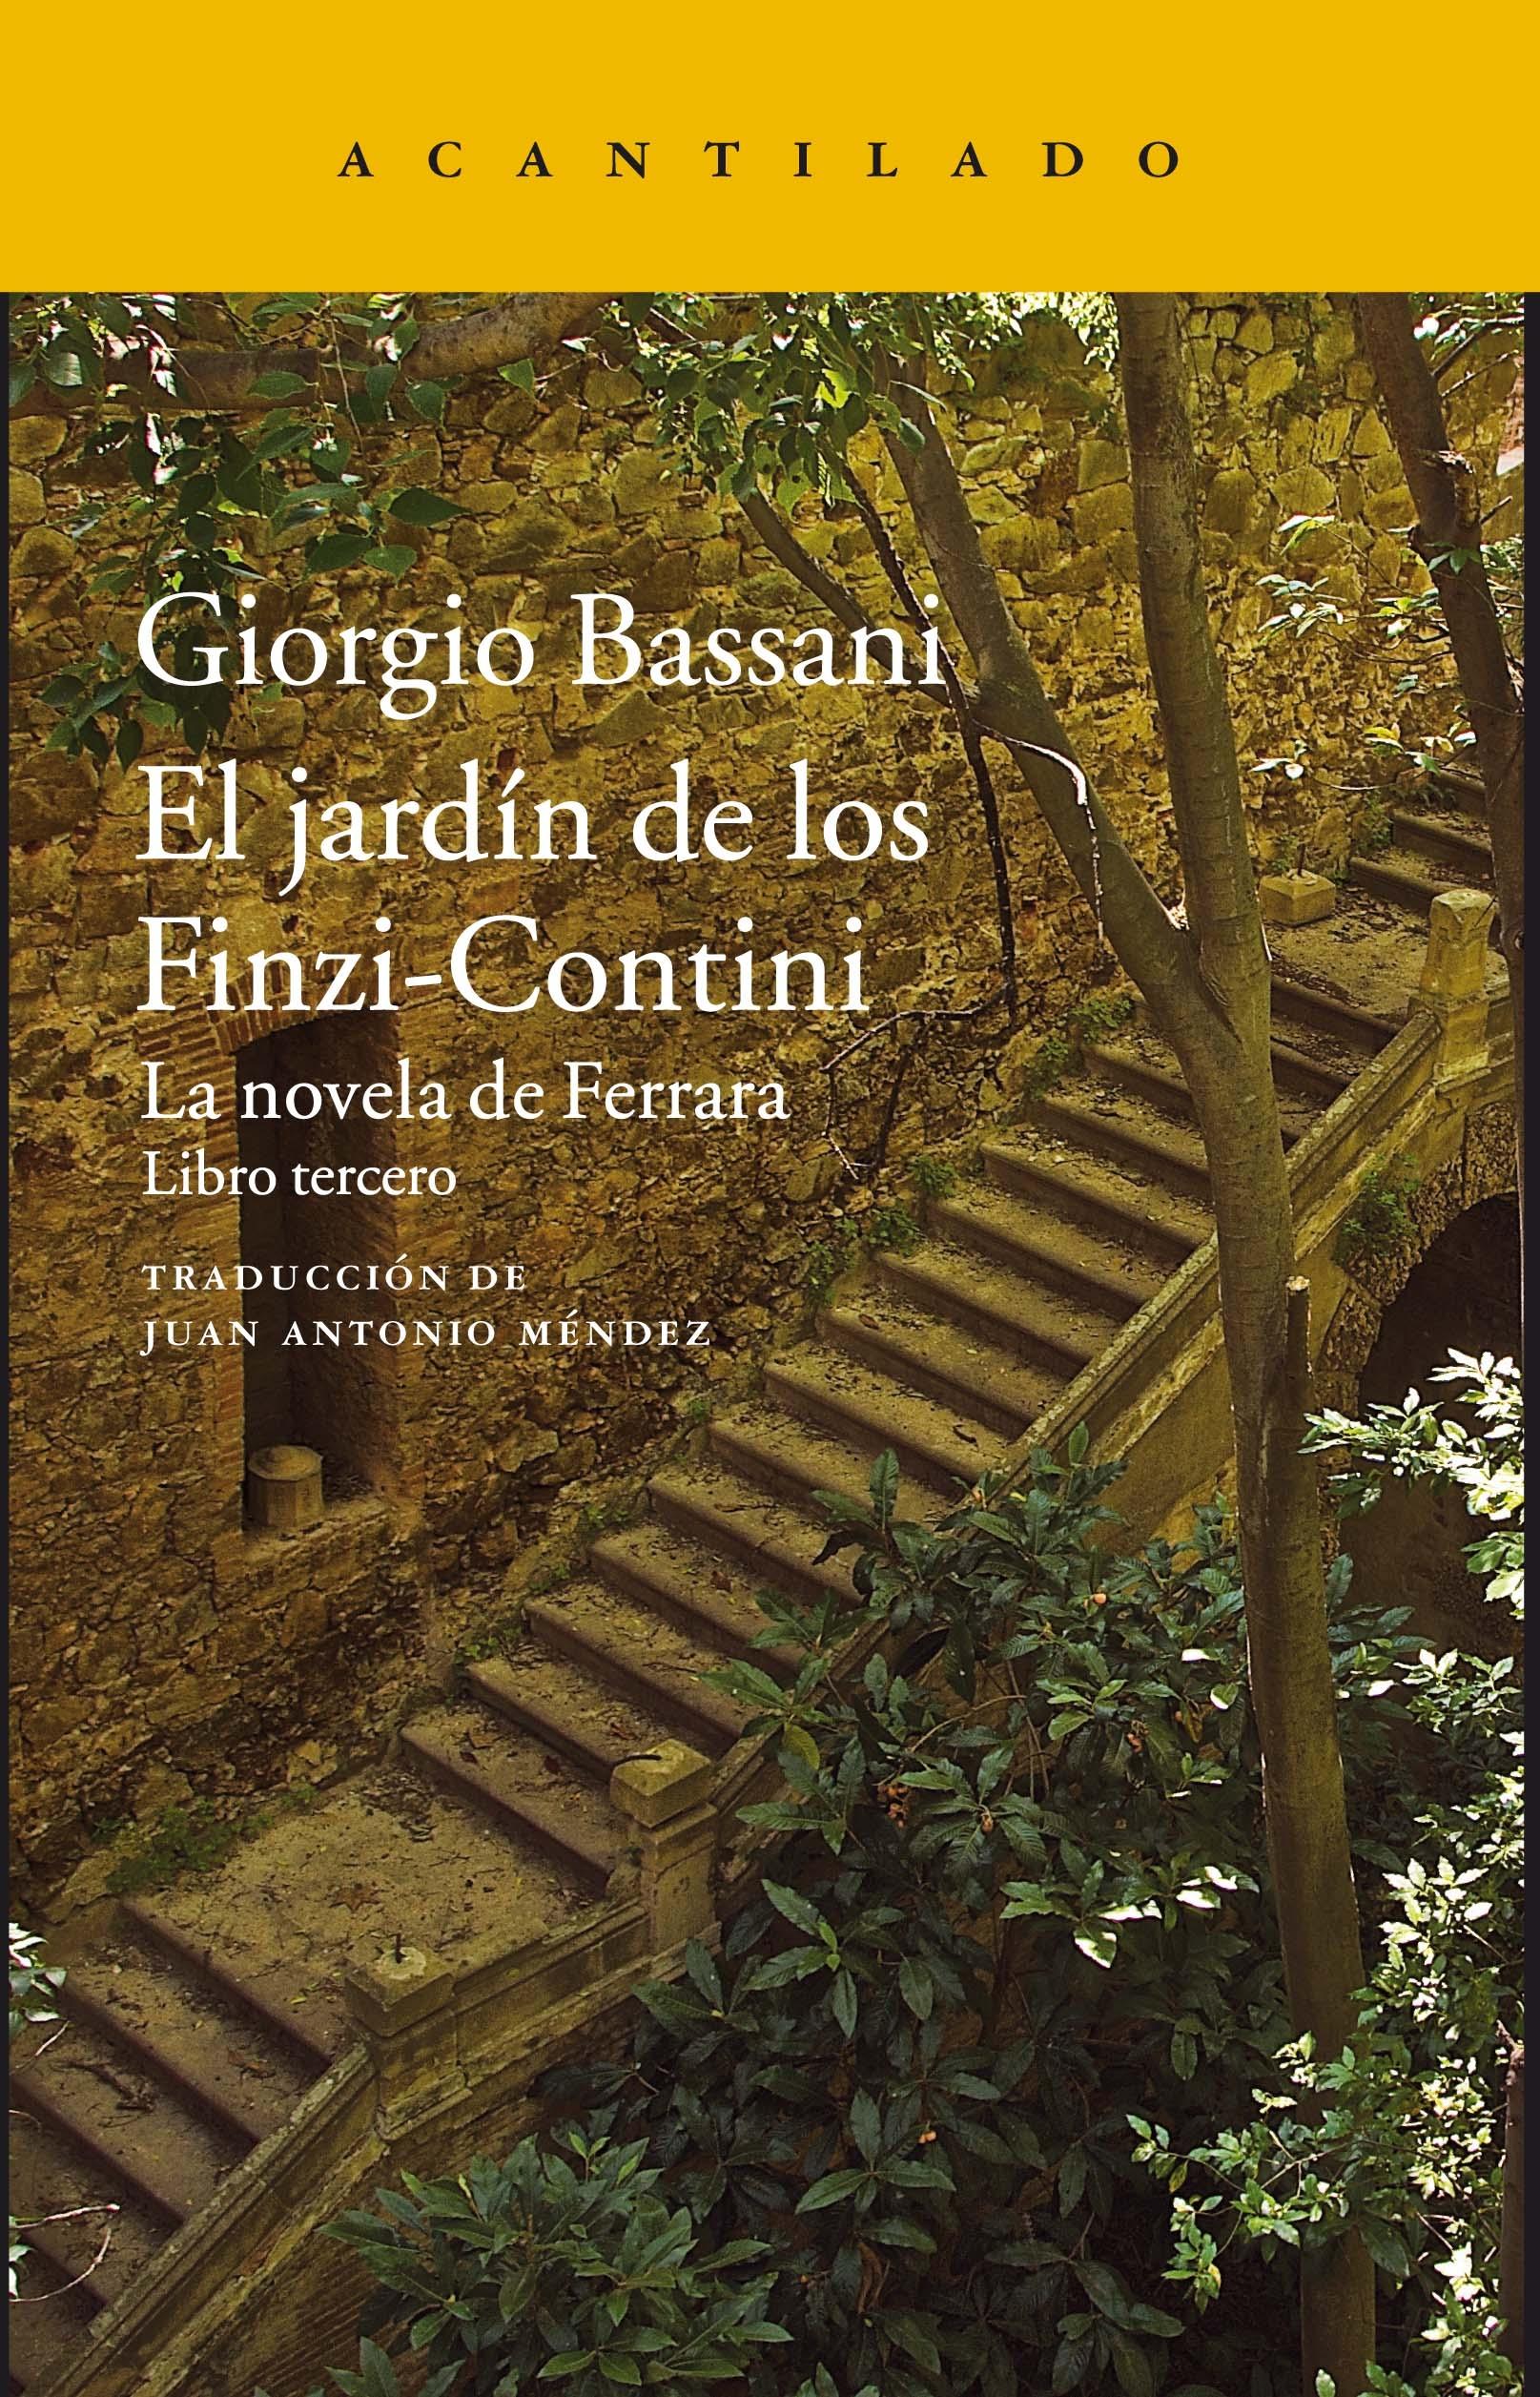 El Jardín de los Finzi-Contini Vol.III "La Novela de Ferrara". 